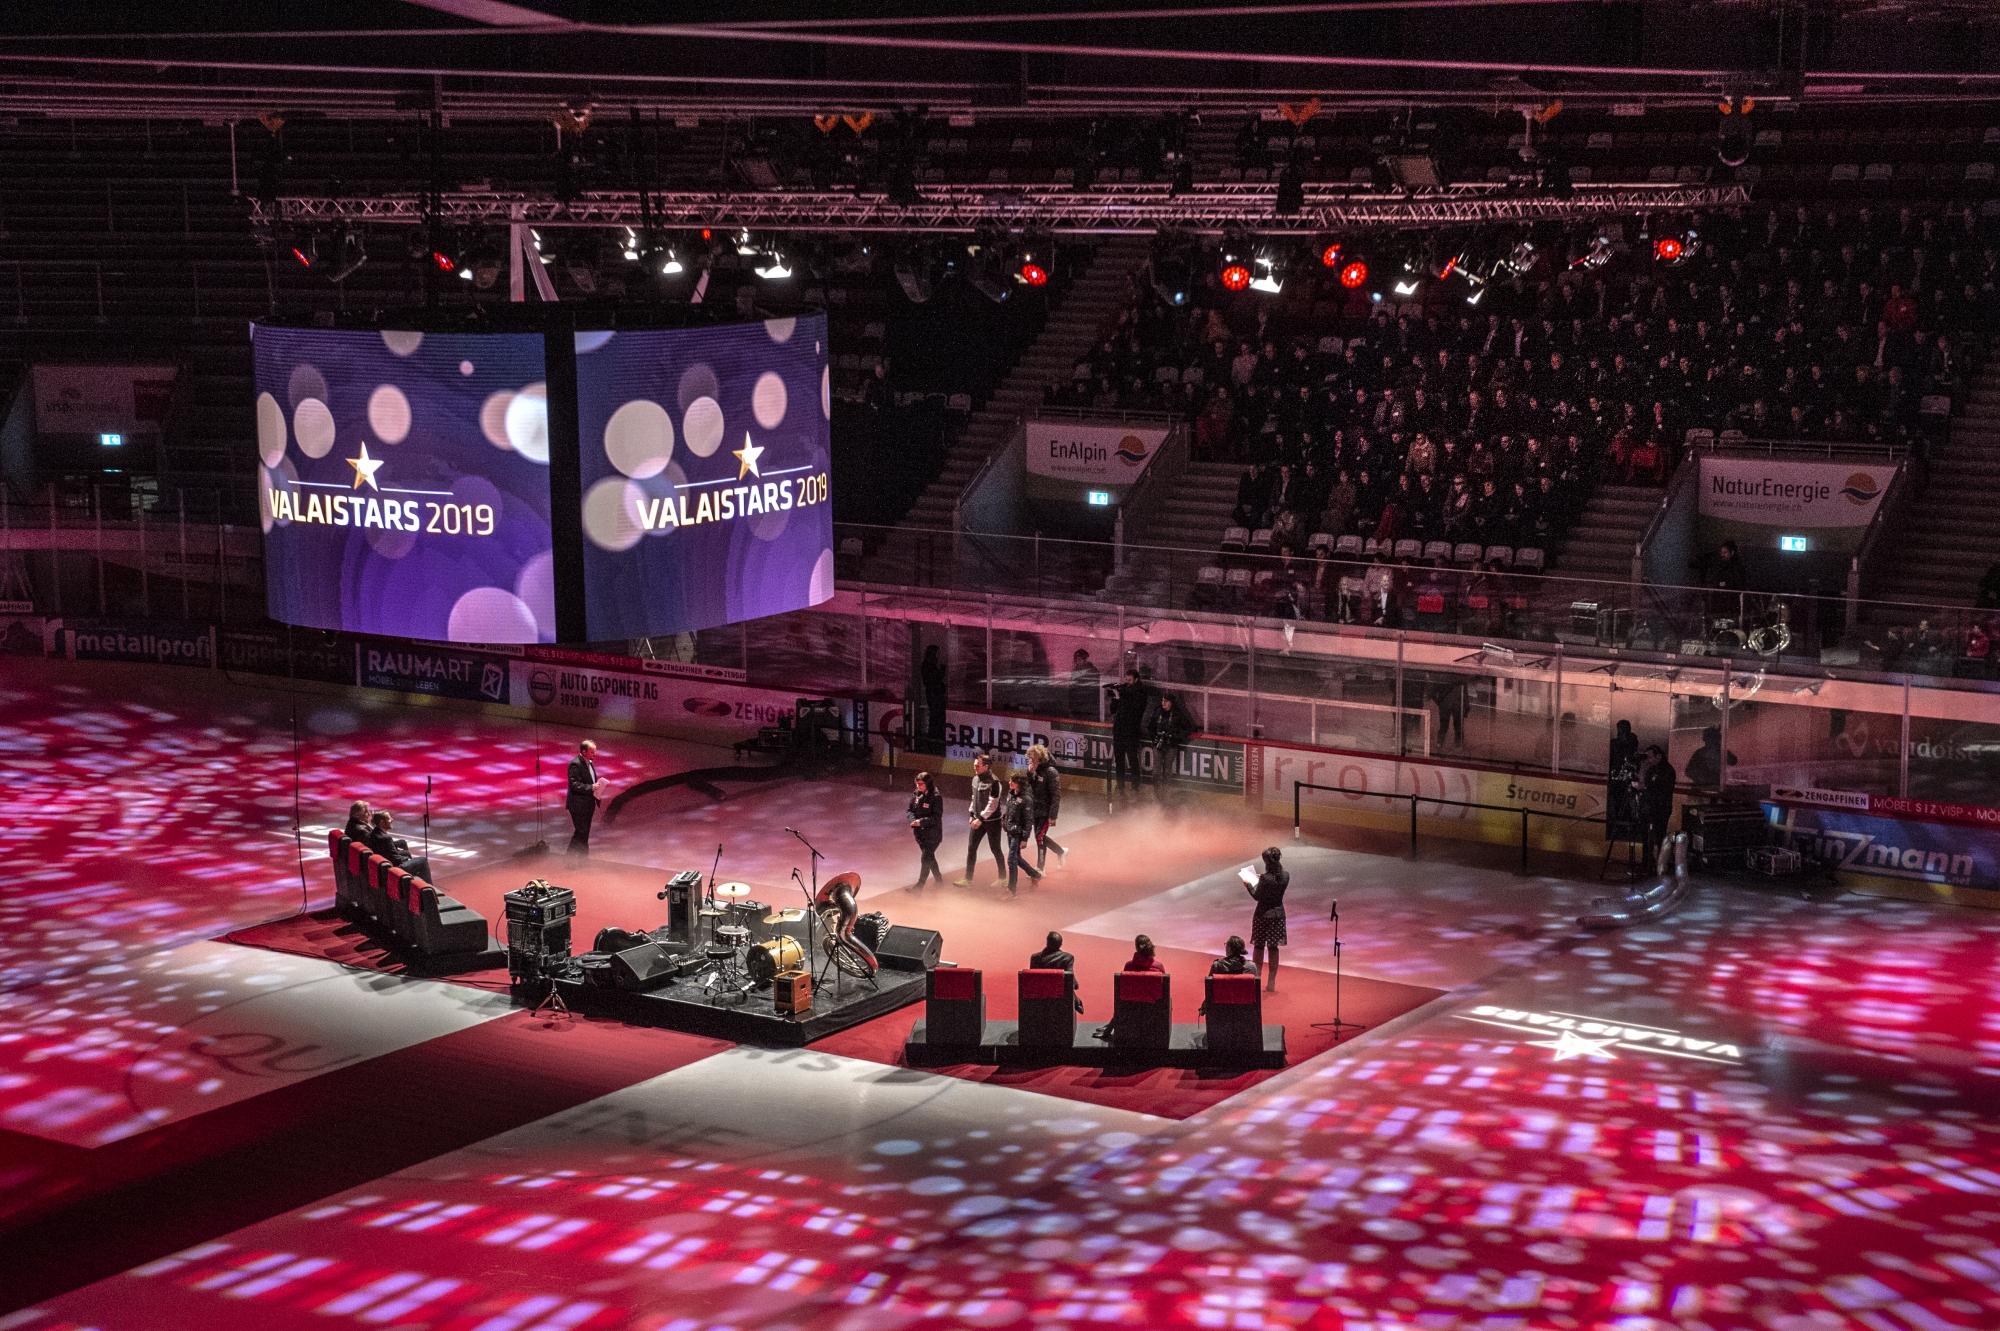 Pour la première fois de sa récente histoire, la Lonza Arena de Viège accueillait un événement non dédié au hockey. 